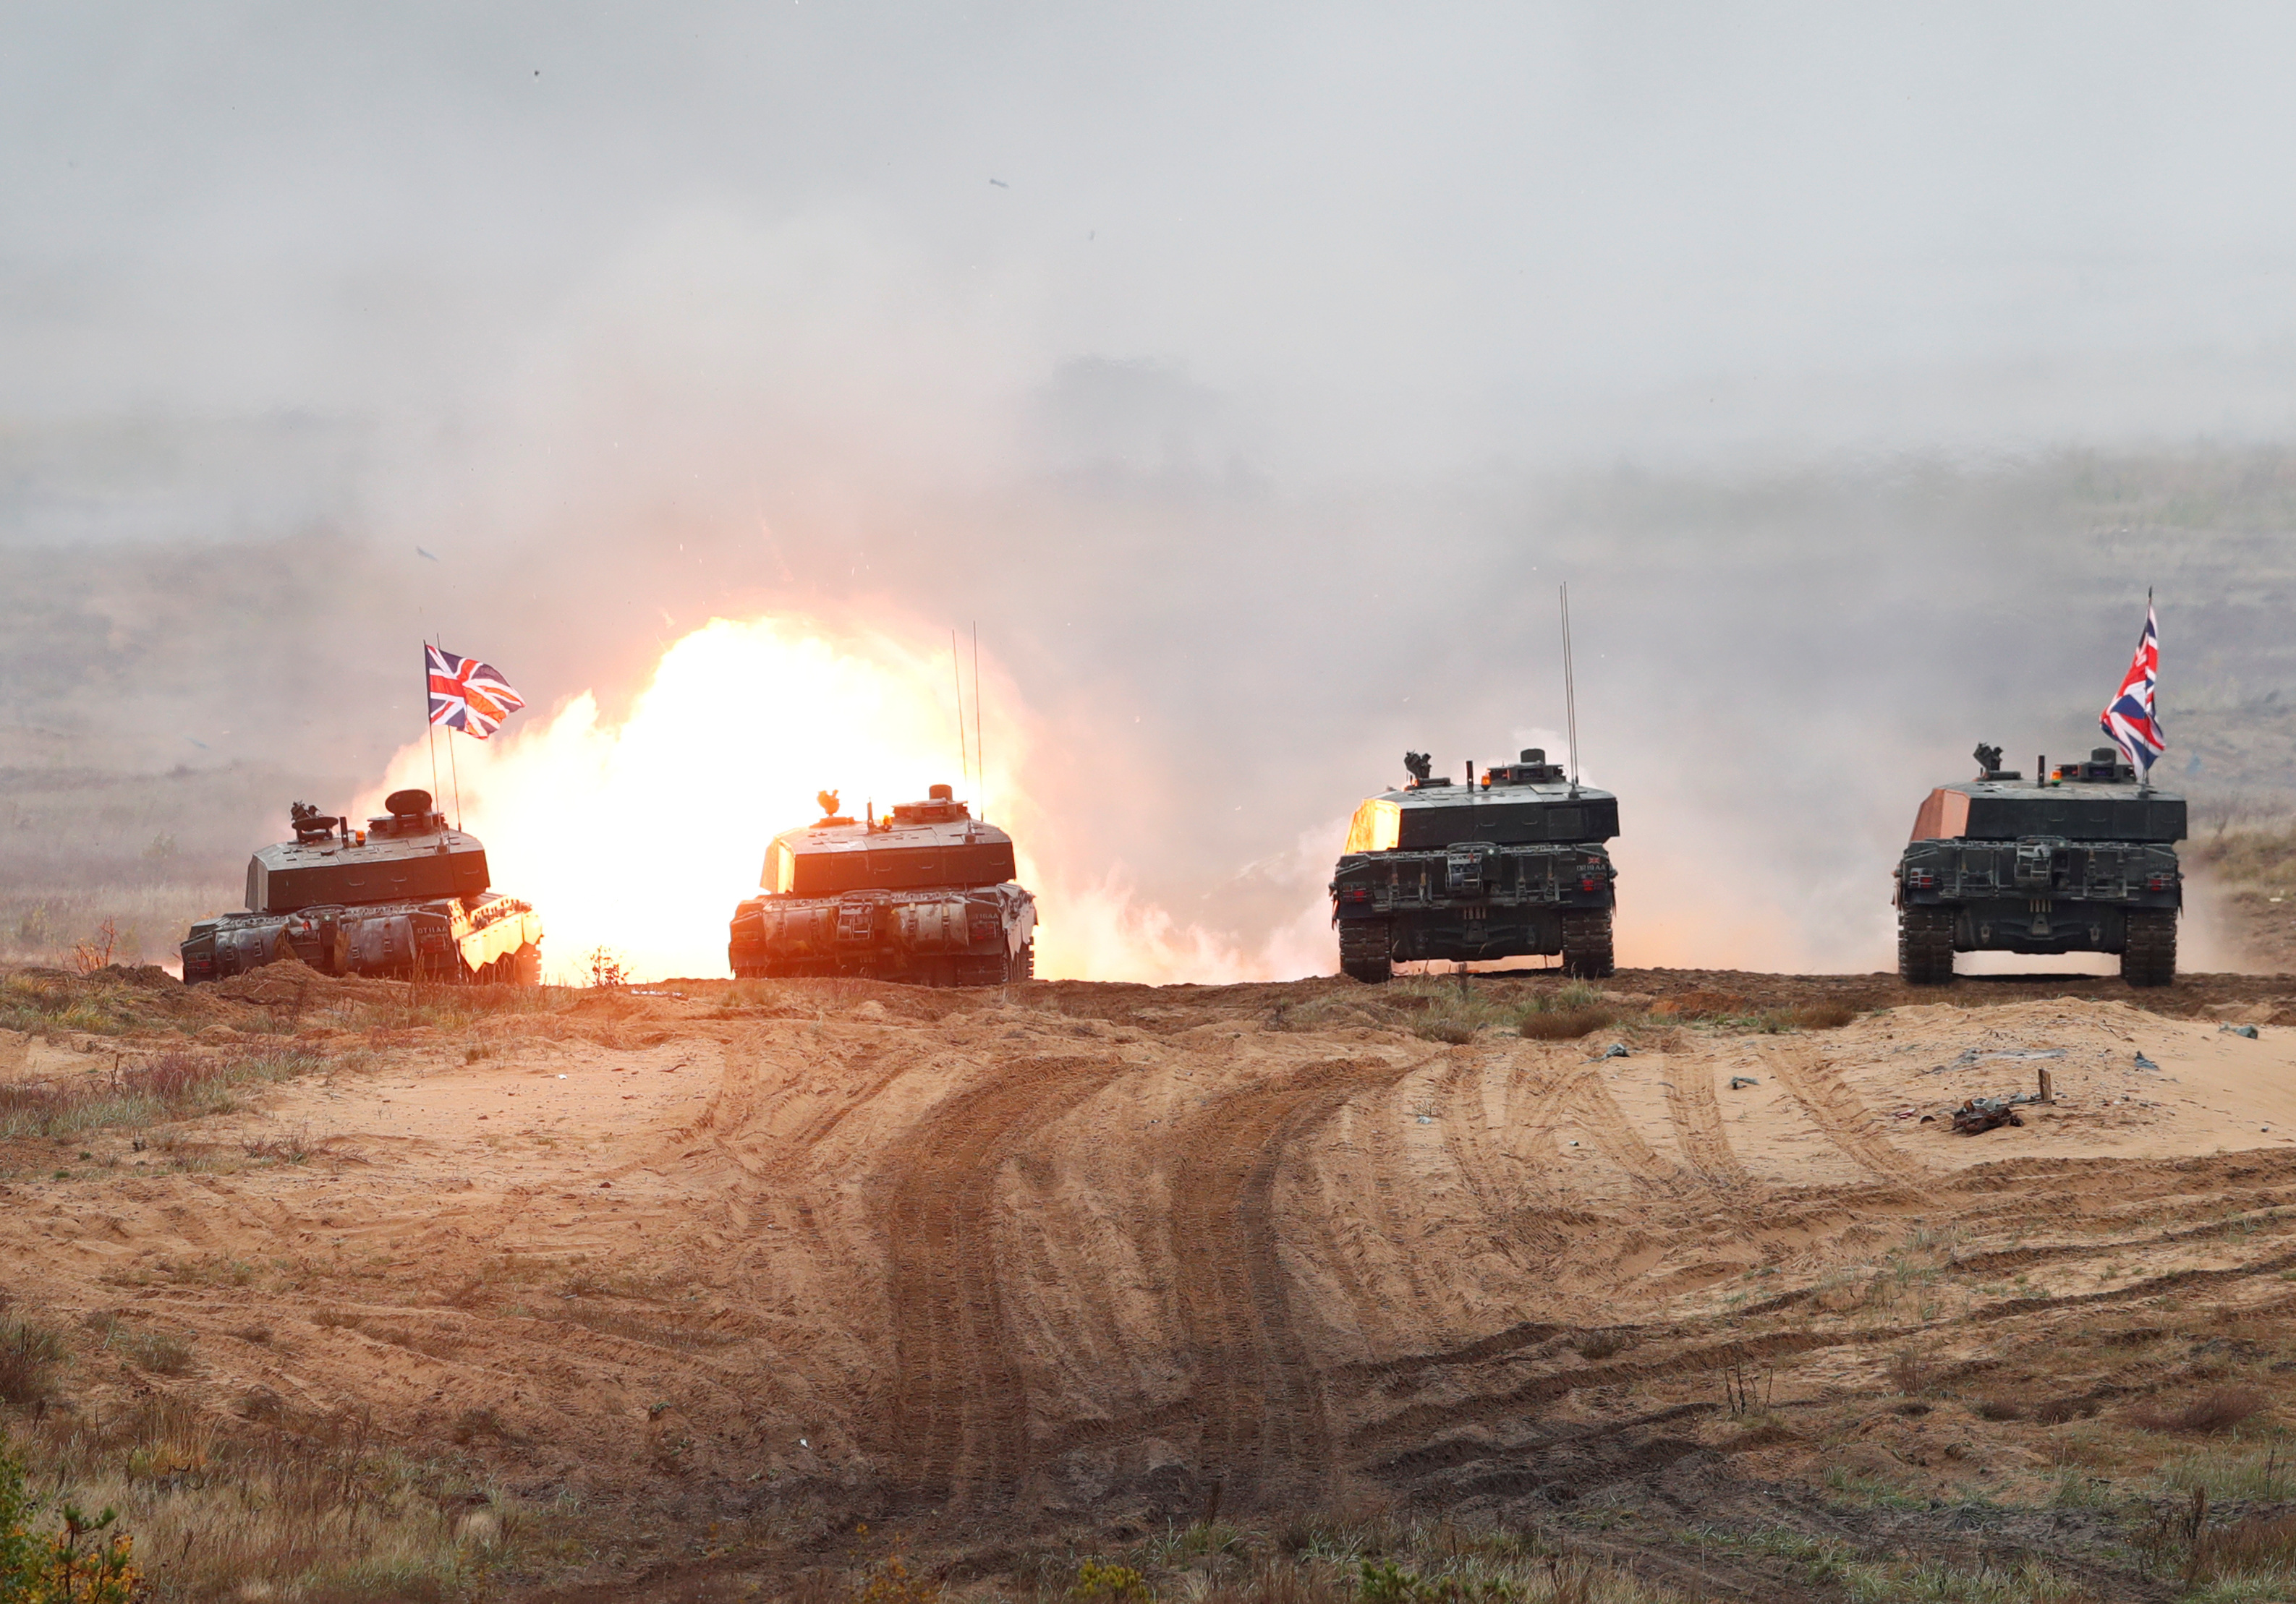 四个英国人军队挑战者 2 坦克在演习中开火。